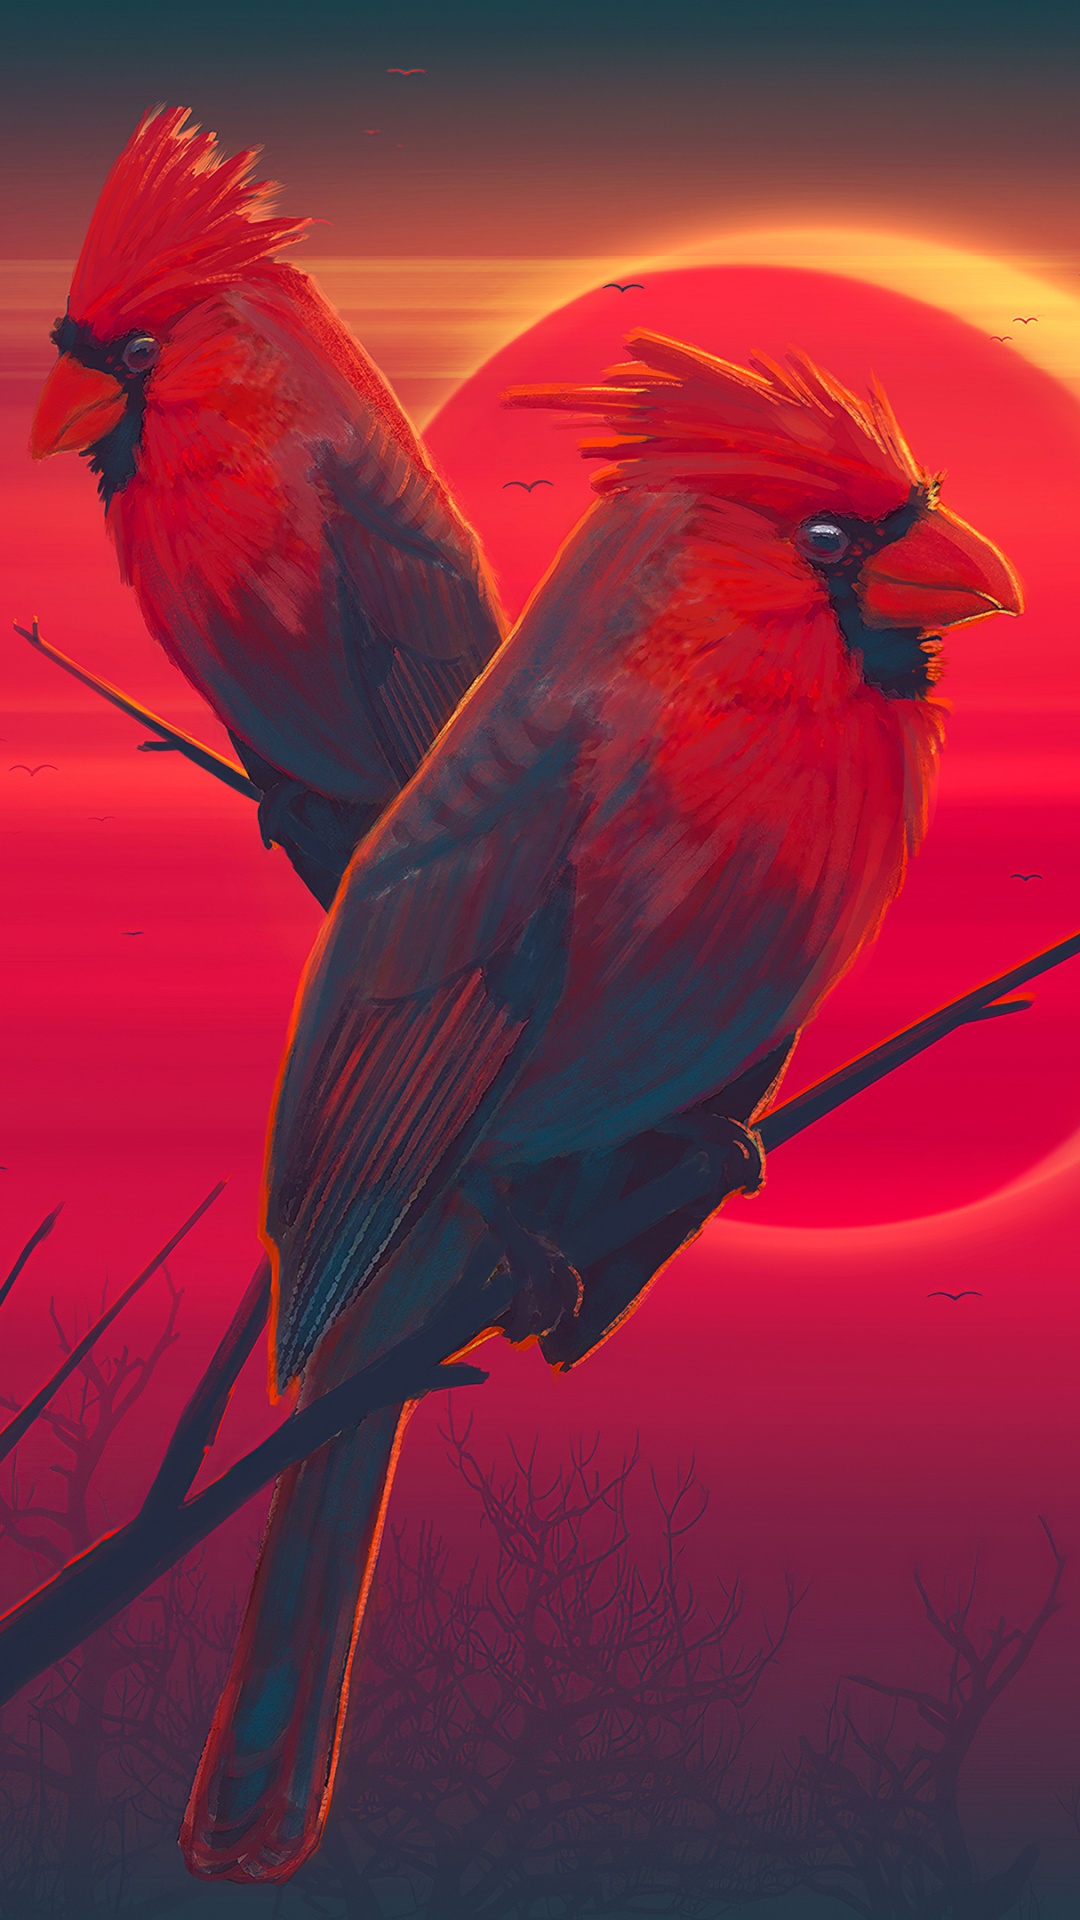 艺术, 红色的, 鸟, 野生动物, 金刚鹦鹉 壁纸 1080x1920 允许